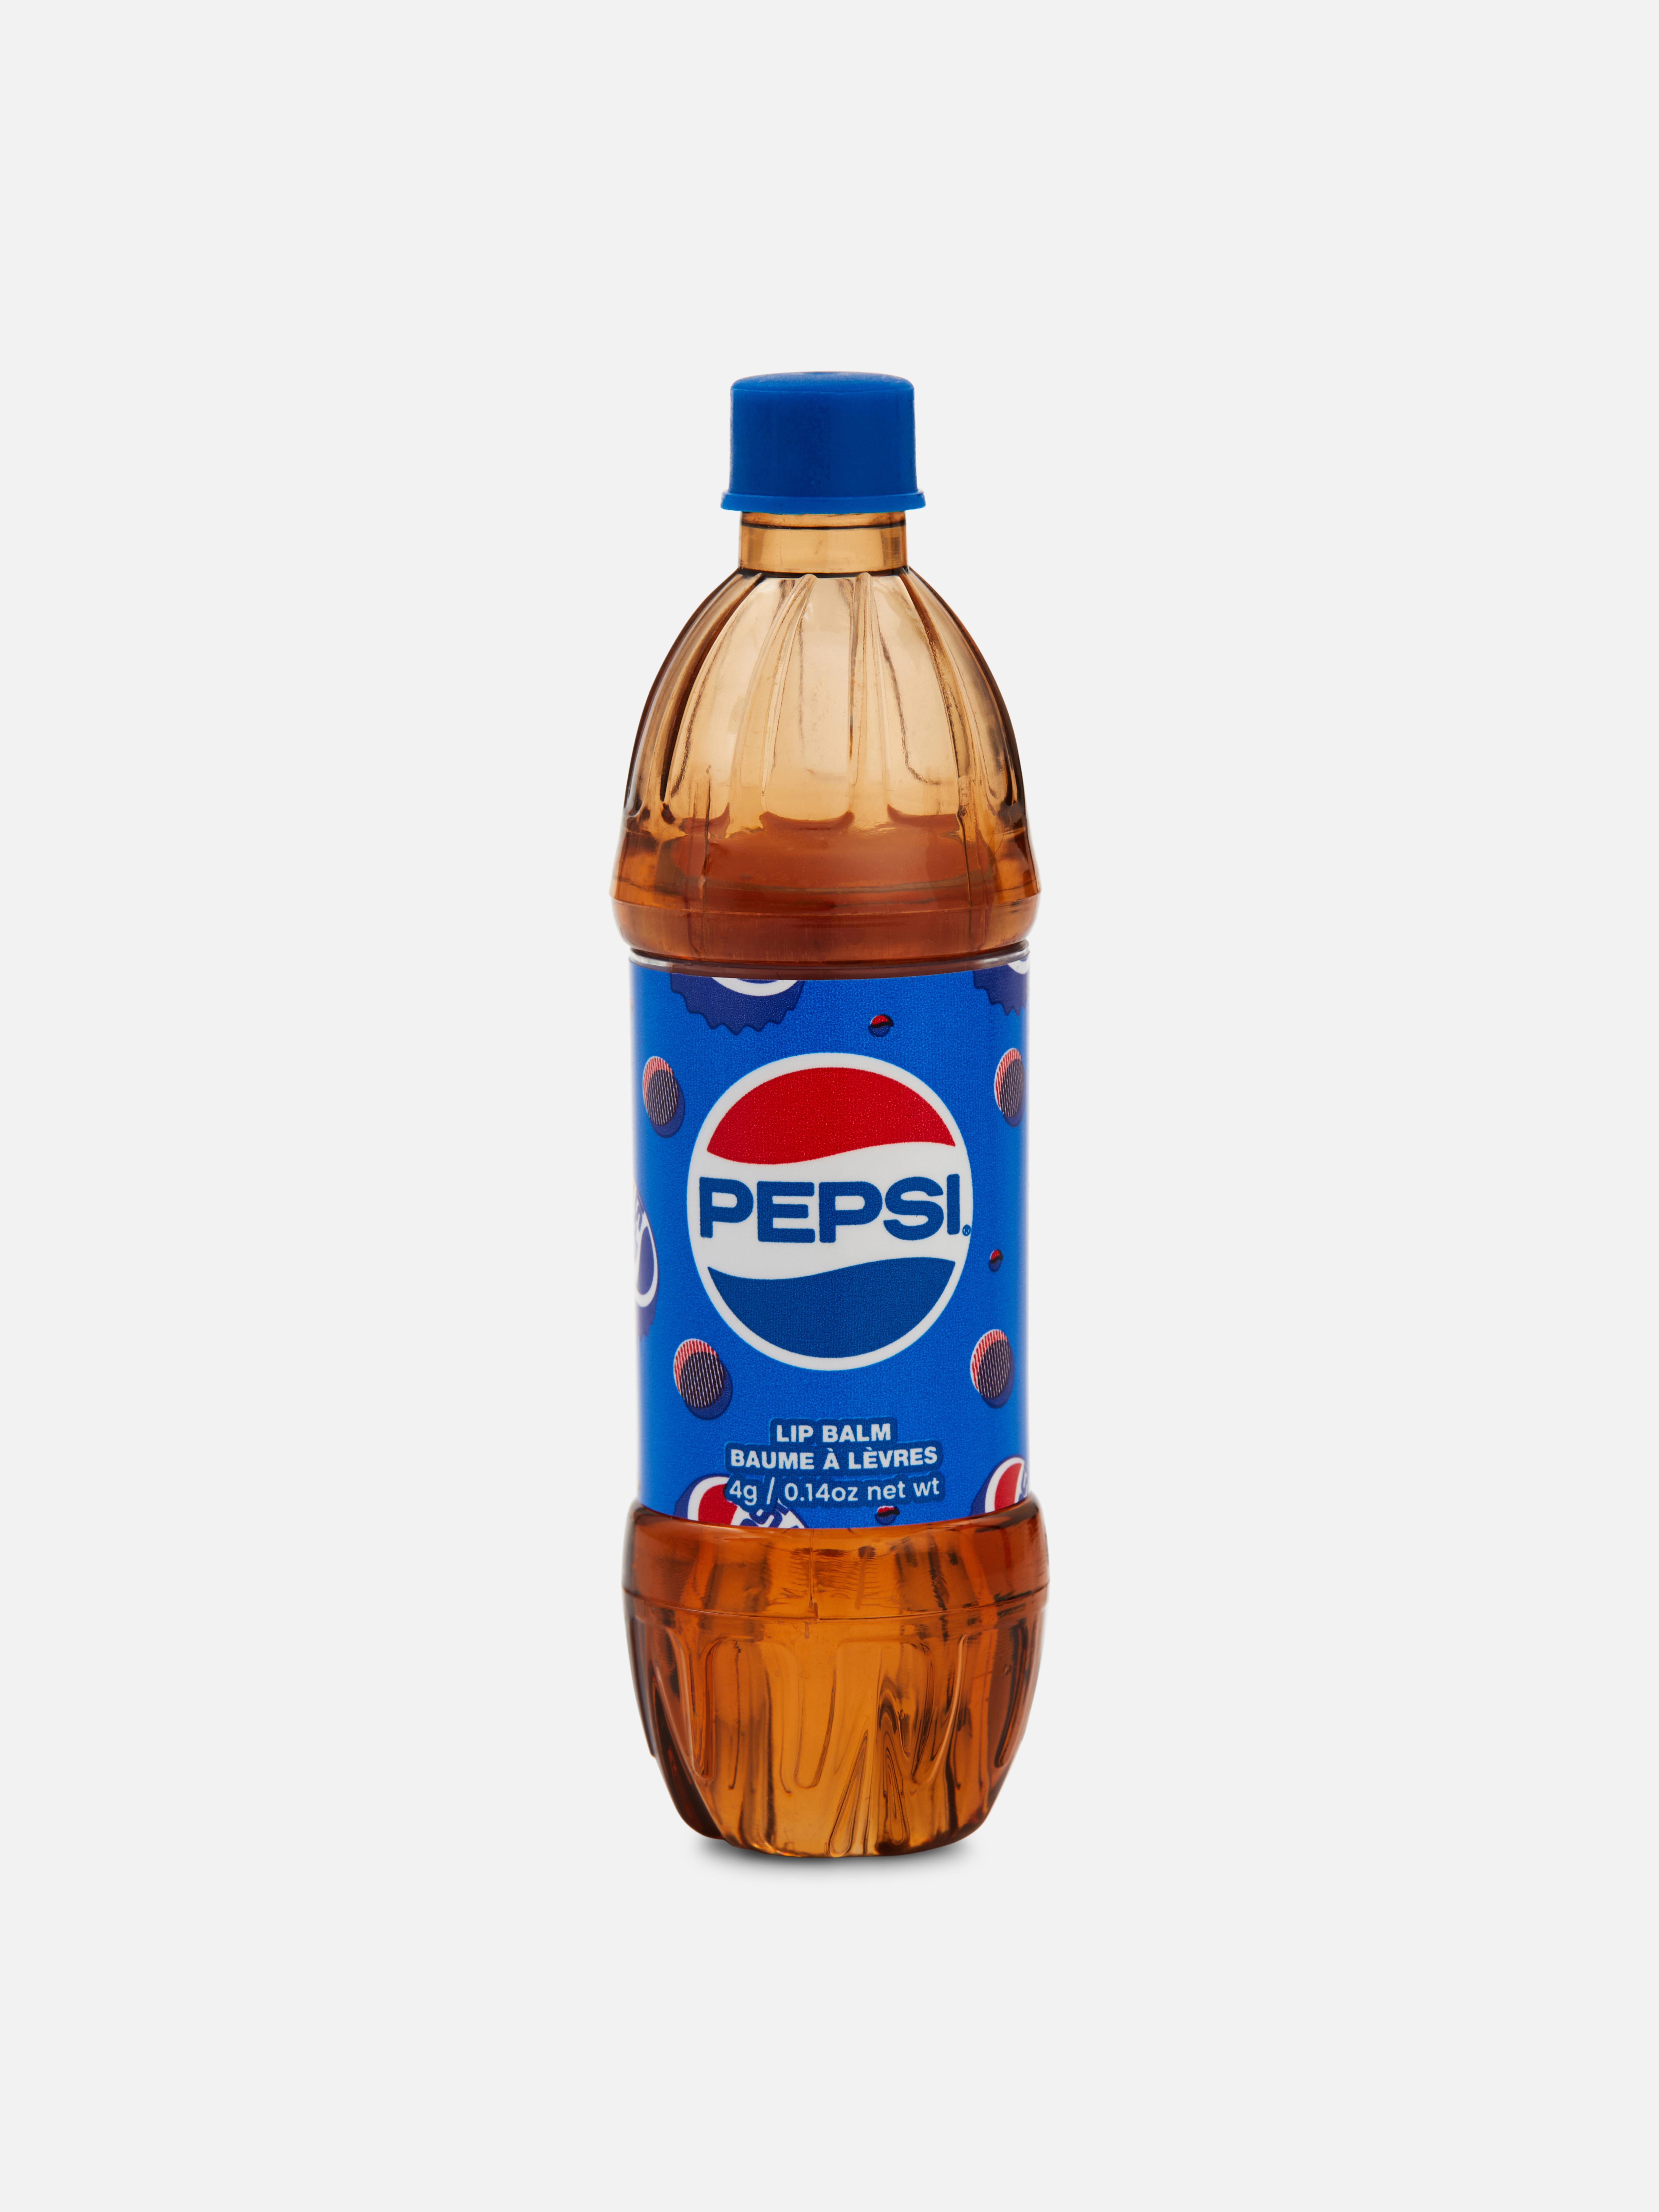 Bálsamo lábios garrafa Pepsi